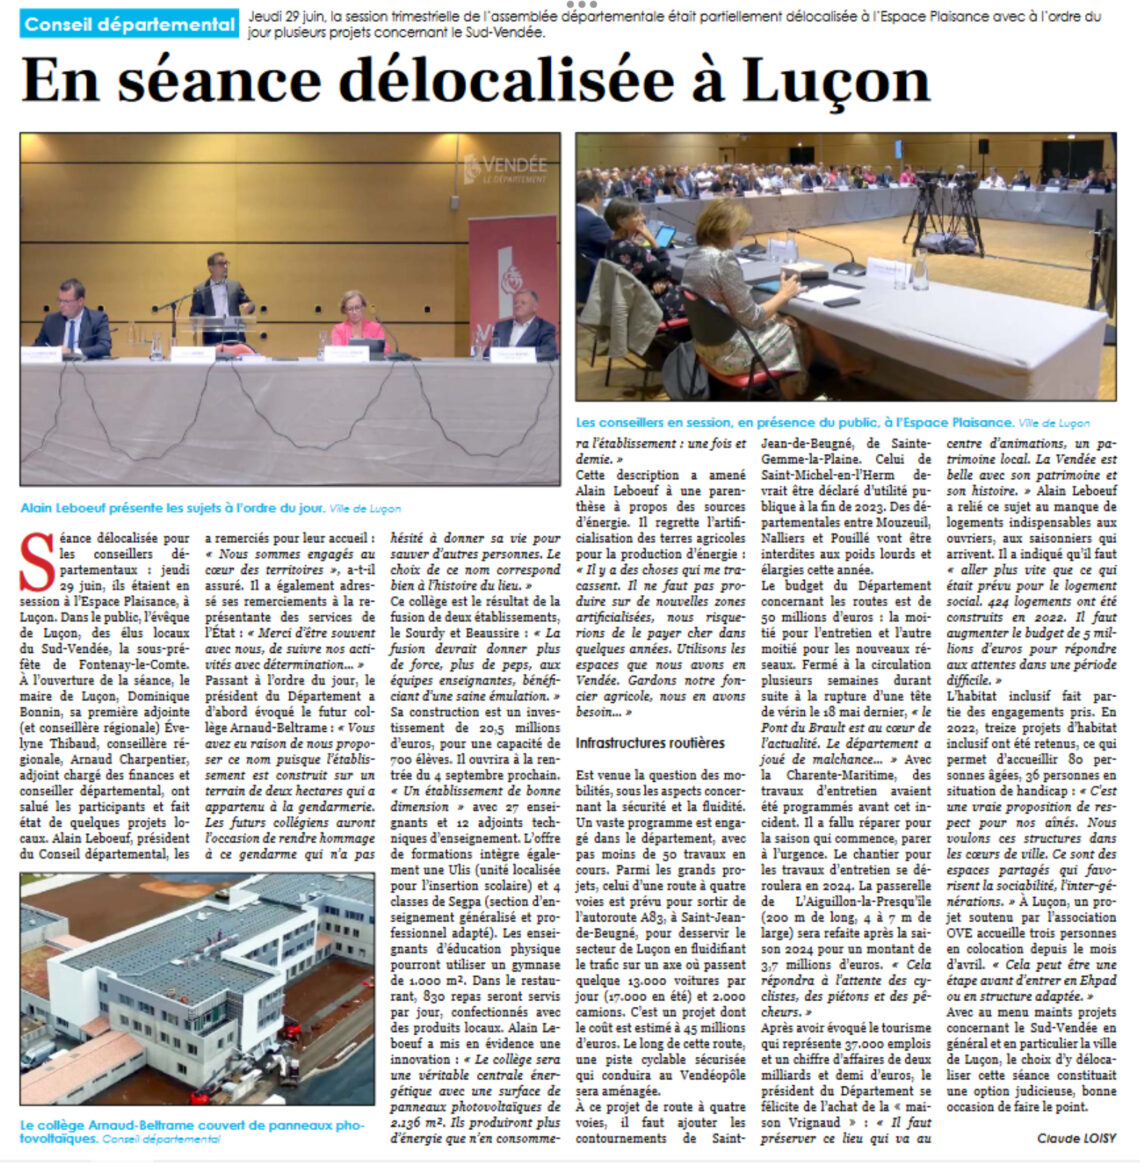 Conseil départemental : Séance délocalisée à Luçon